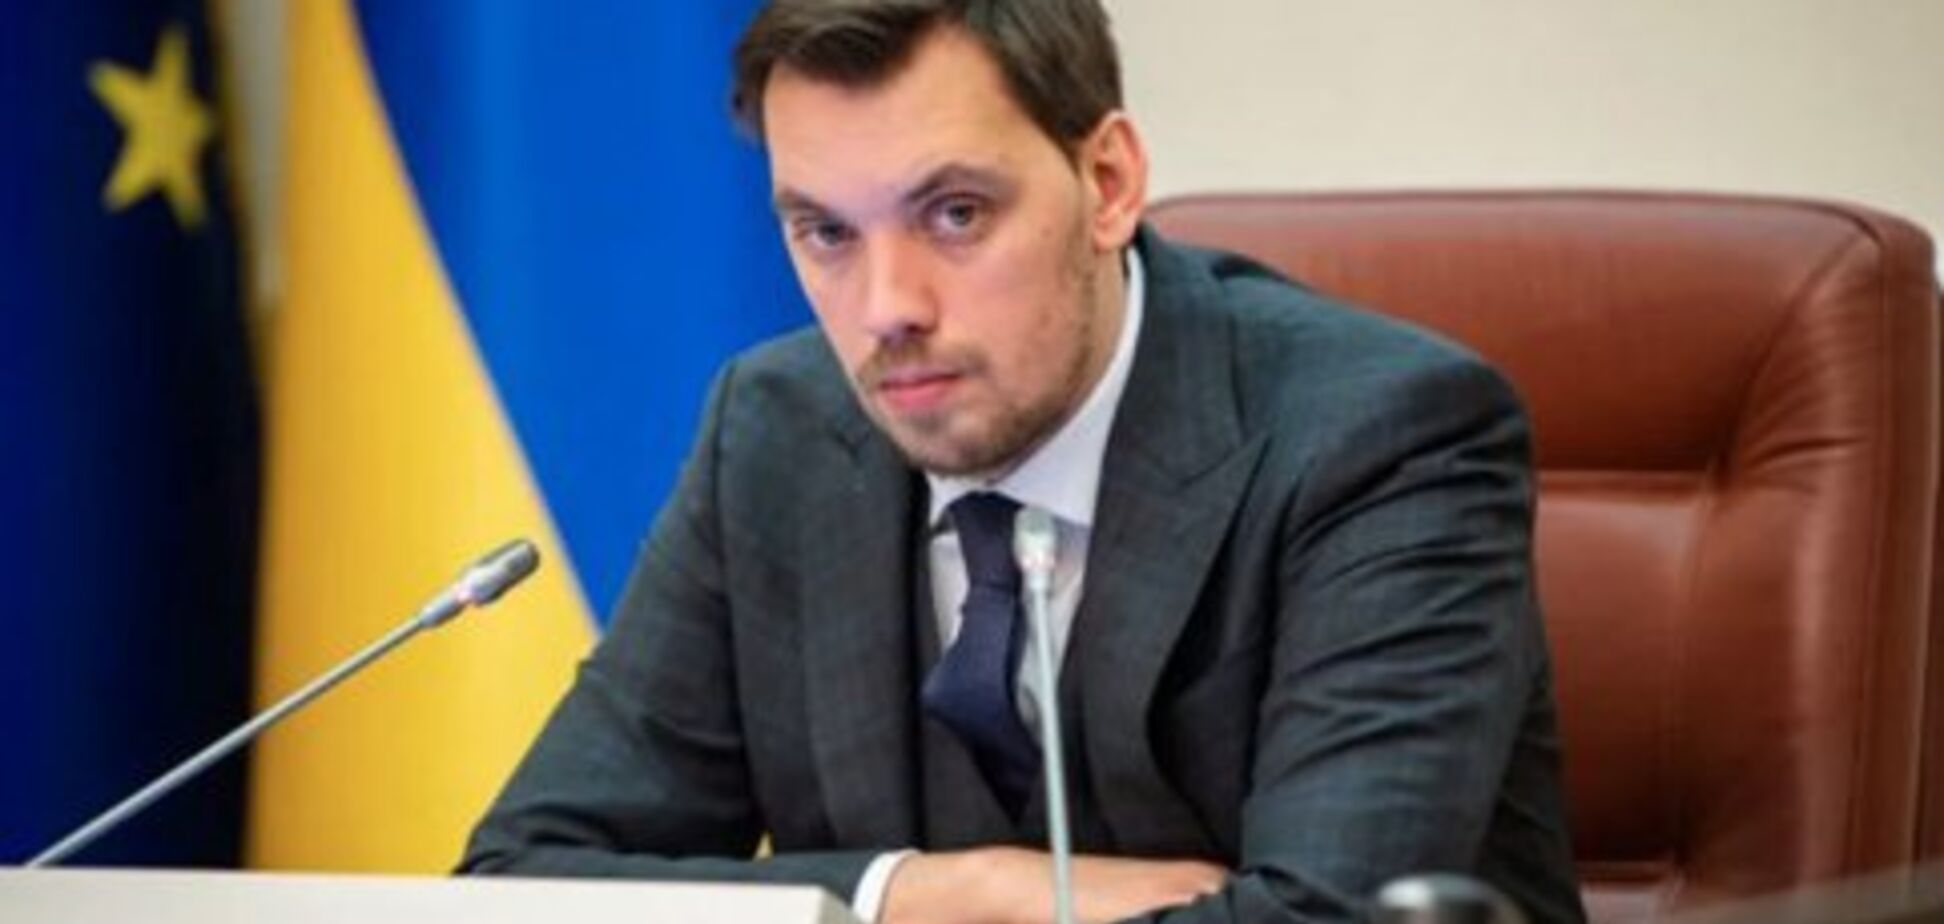 'Політичний жест': Разумков пояснив заяву про відставку Гончарука